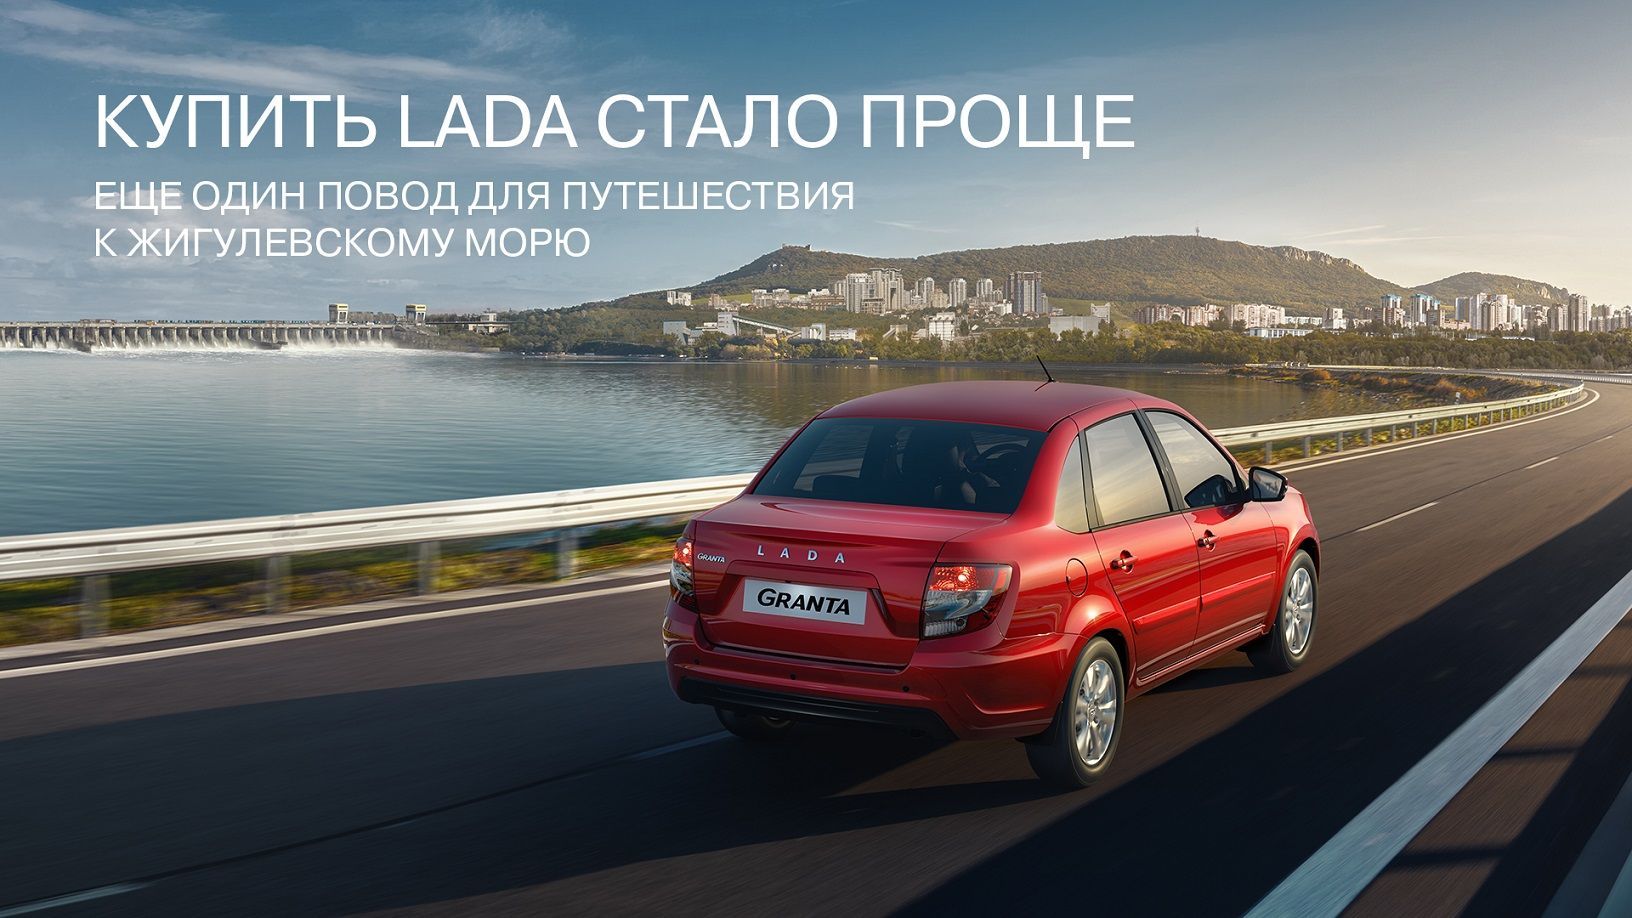 Открылись онлайн-продажи автомобилей LADA по заводской цене ! 